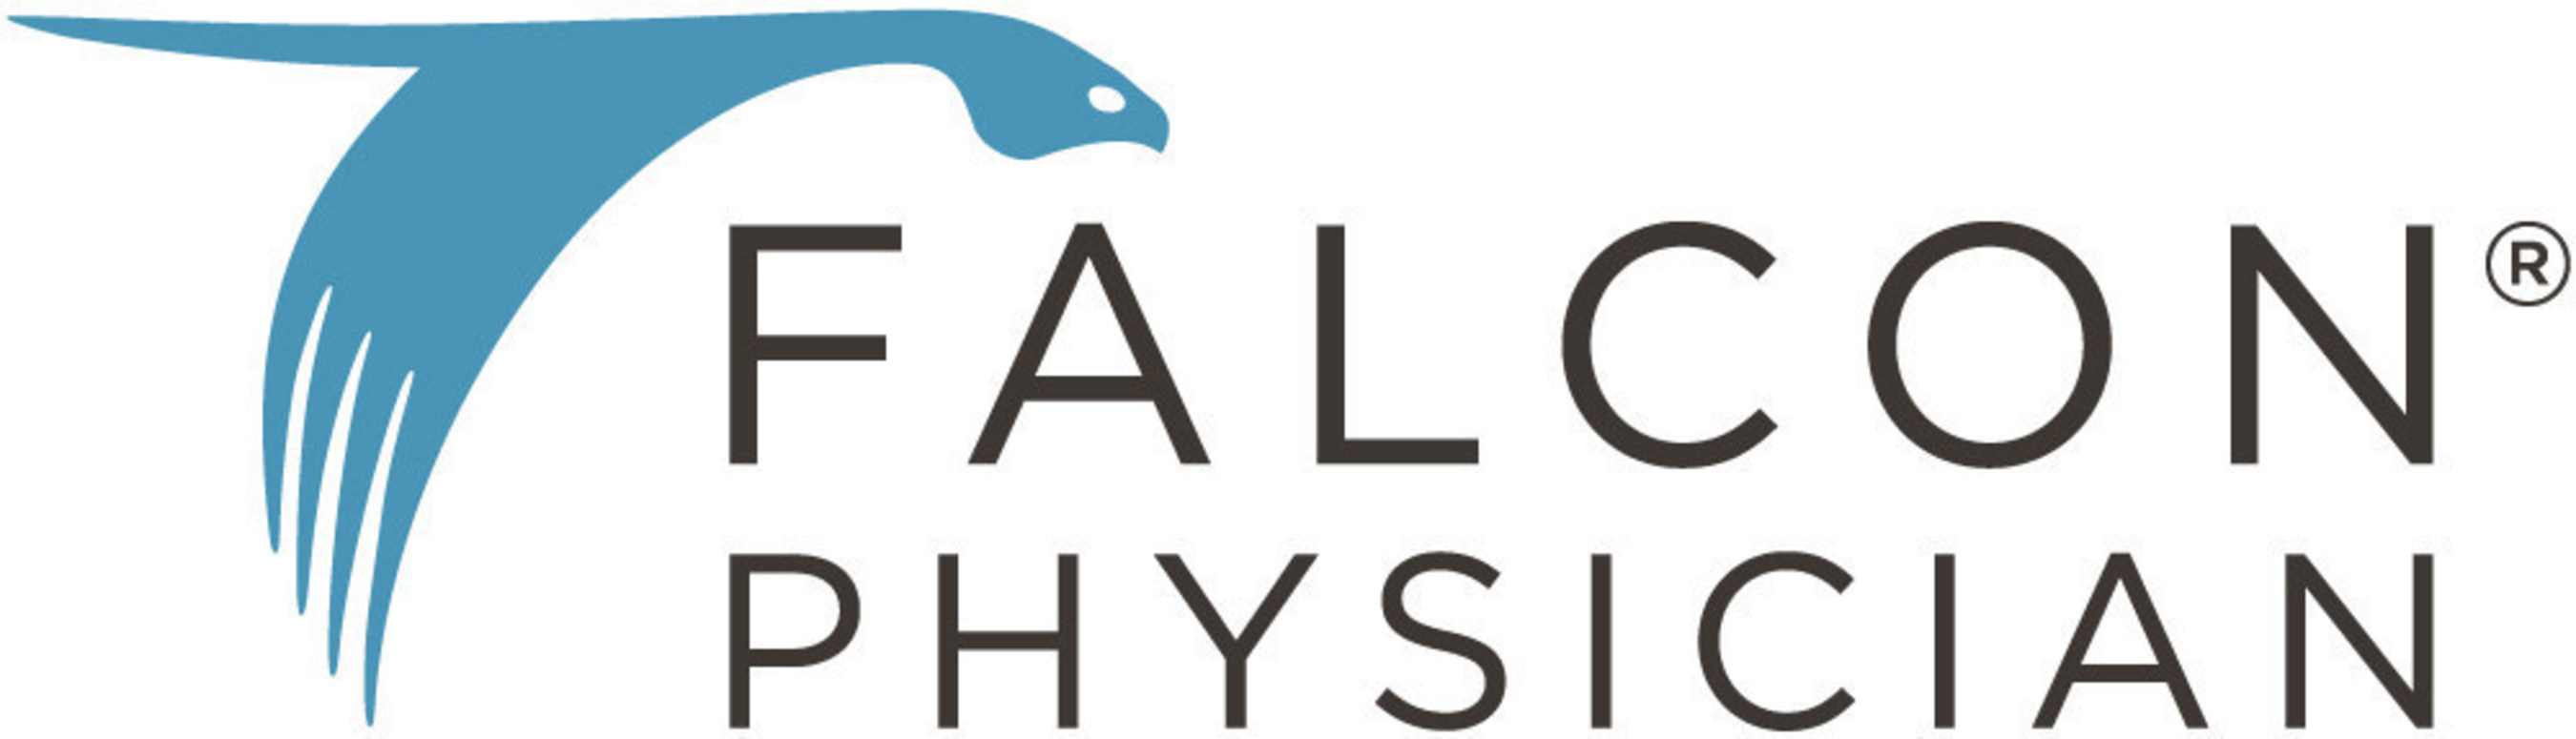 Falcon Physician logo.